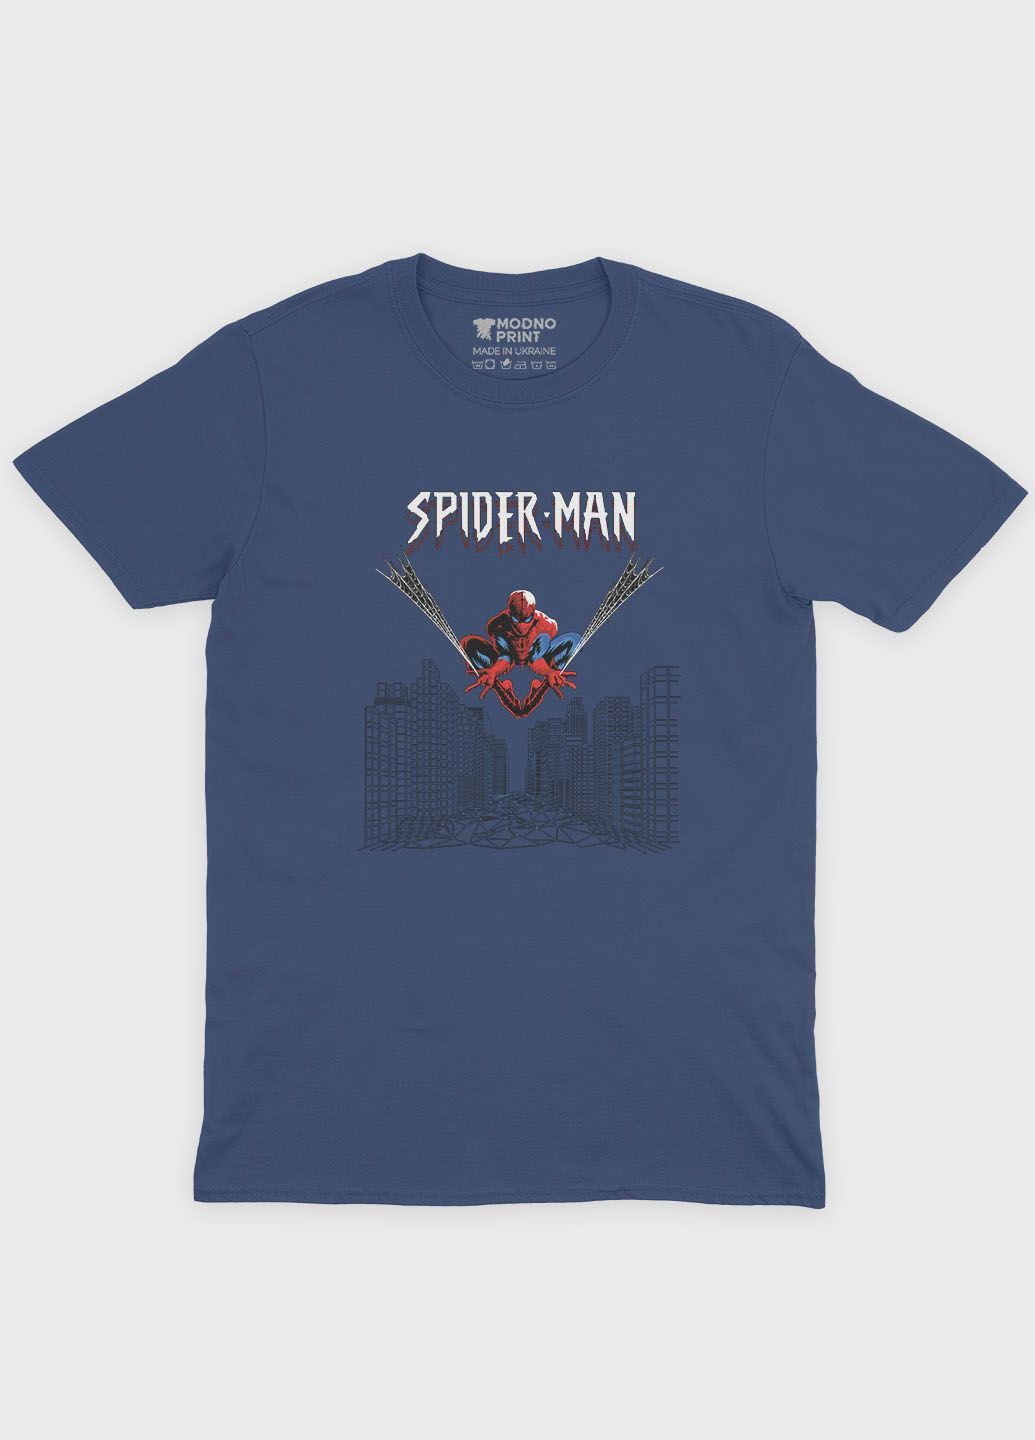 Темно-синяя демисезонная футболка для мальчика с принтом супергероя - человек-паук (ts001-1-nav-006-014-038-b) Modno